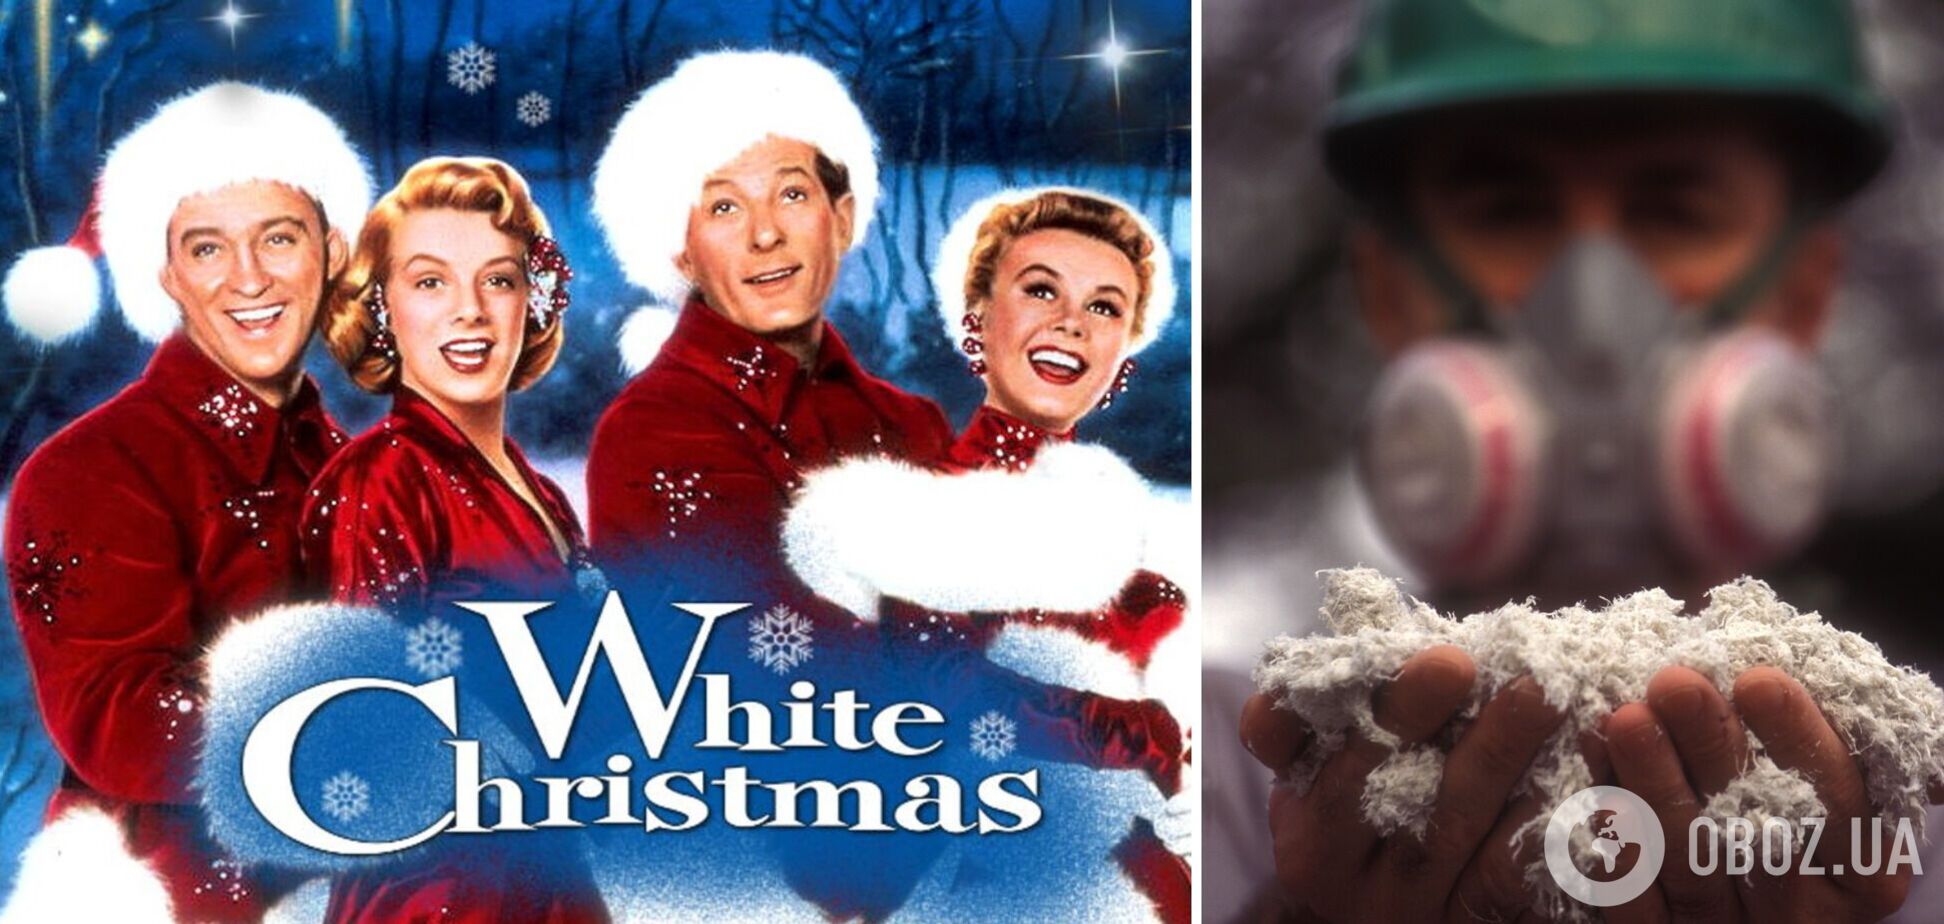 Актеров одного из самых популярных рождественских фильмов едва не 'убил' искусственный снег: стали известны резонансные подробности 1950-х годов